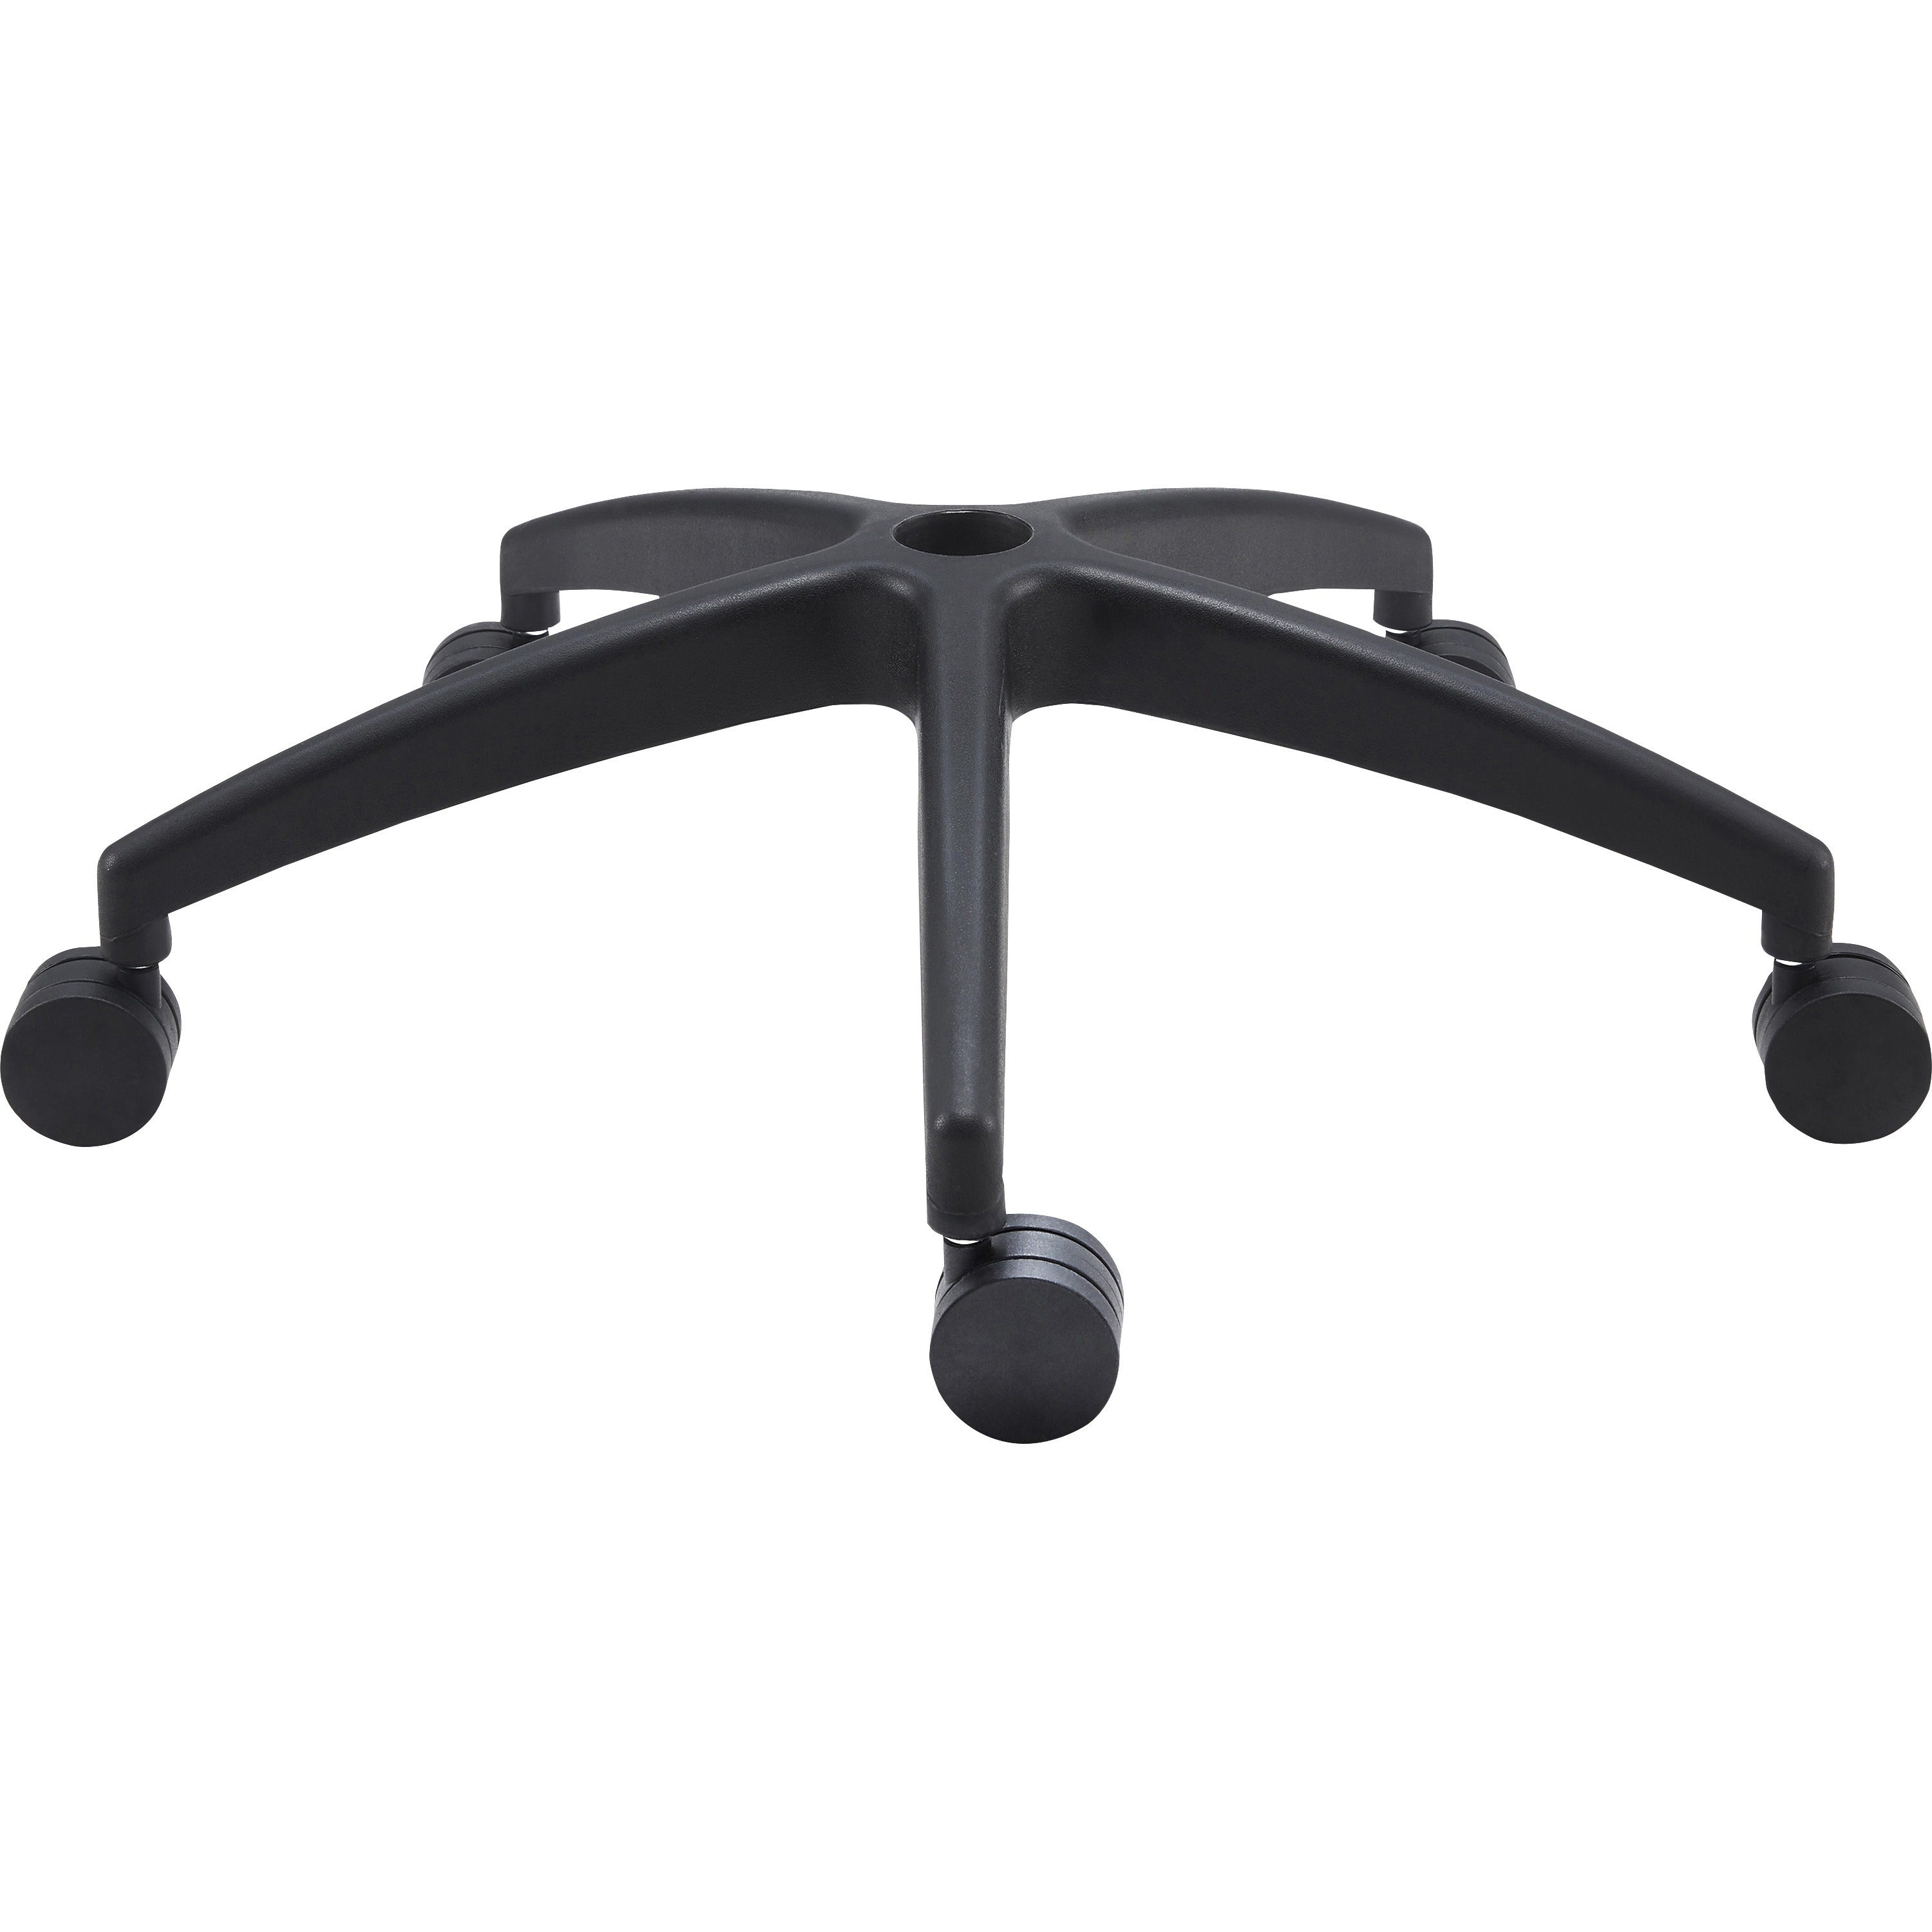 lys-soho-staff-chair-fabric-seat-black-armrest-1-each_lysch200mabk - 2